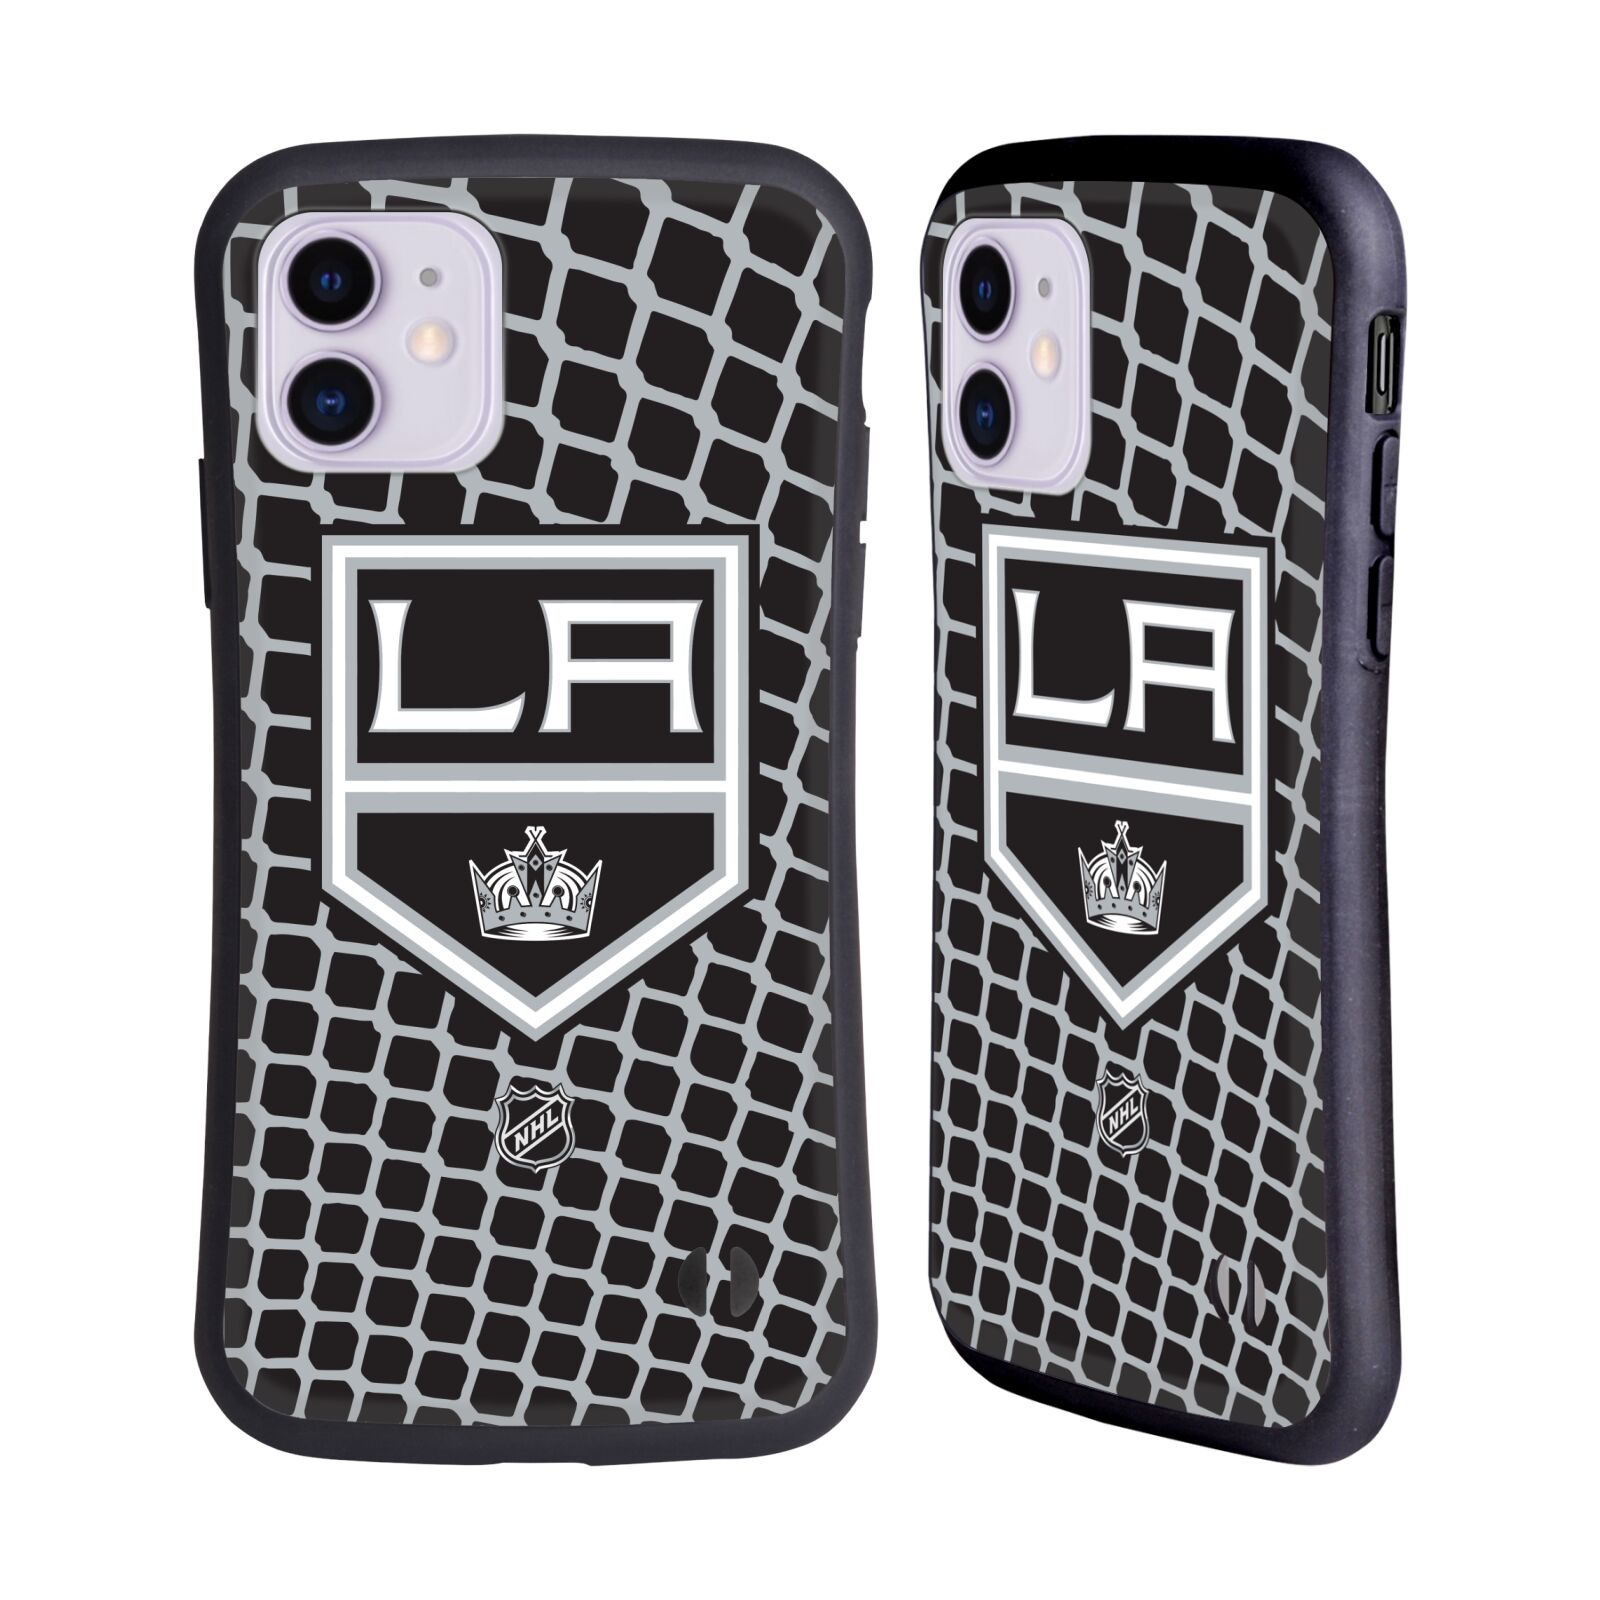 Obal na mobil Apple iPhone 11 - HEAD CASE - NHL - Los Angeles Kings - znak v síti